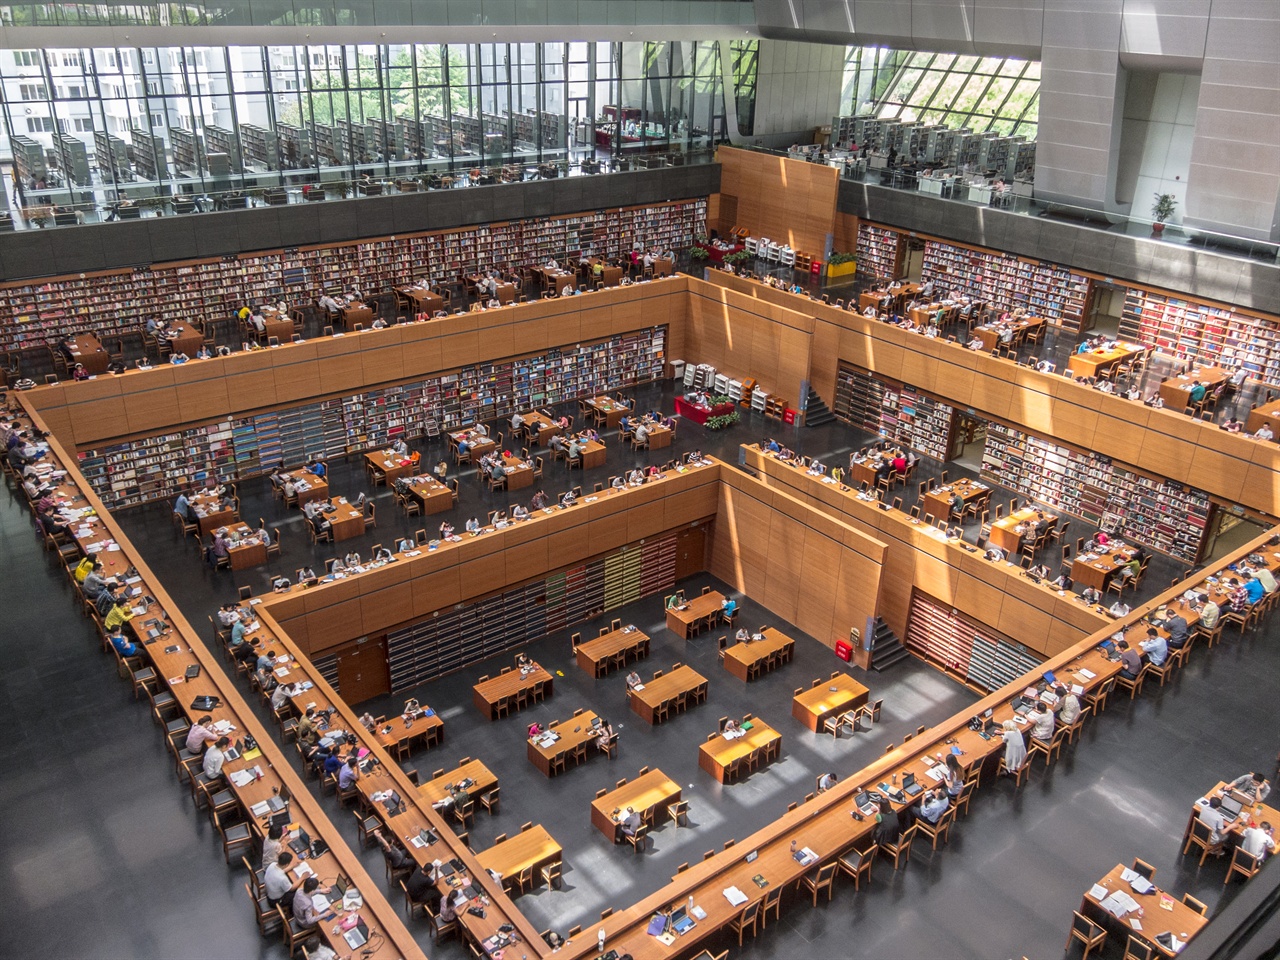 베이징에 있는 중국국가도서관(National Library of China) 신관 중앙홀 모습이다. 1909년 9월 9일 ‘경사도서관’이라는 이름으로 설립된 중국국가도서관은 110년의 역사를 자랑한다. 미국 최대 도서관인 의회도서관(Library of Congress)을 LC라고 부르는 것처럼 중국국가도서관도 약칭으로 NLC라고 불린다. 